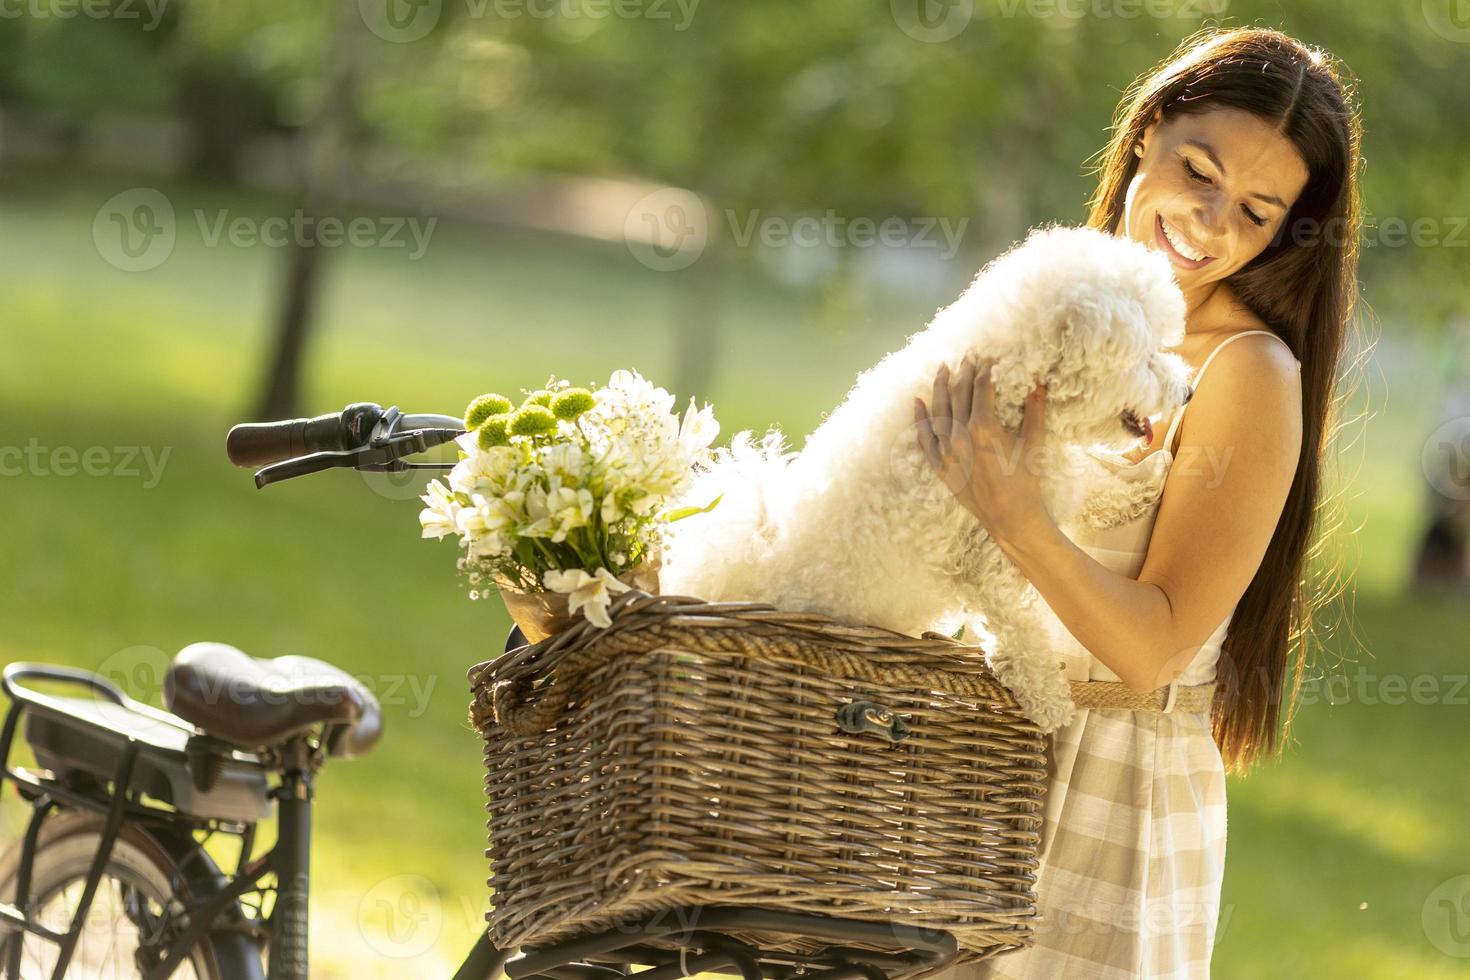 giovane donna con cane bianco bichon frise nel cestino della bici elettrica foto